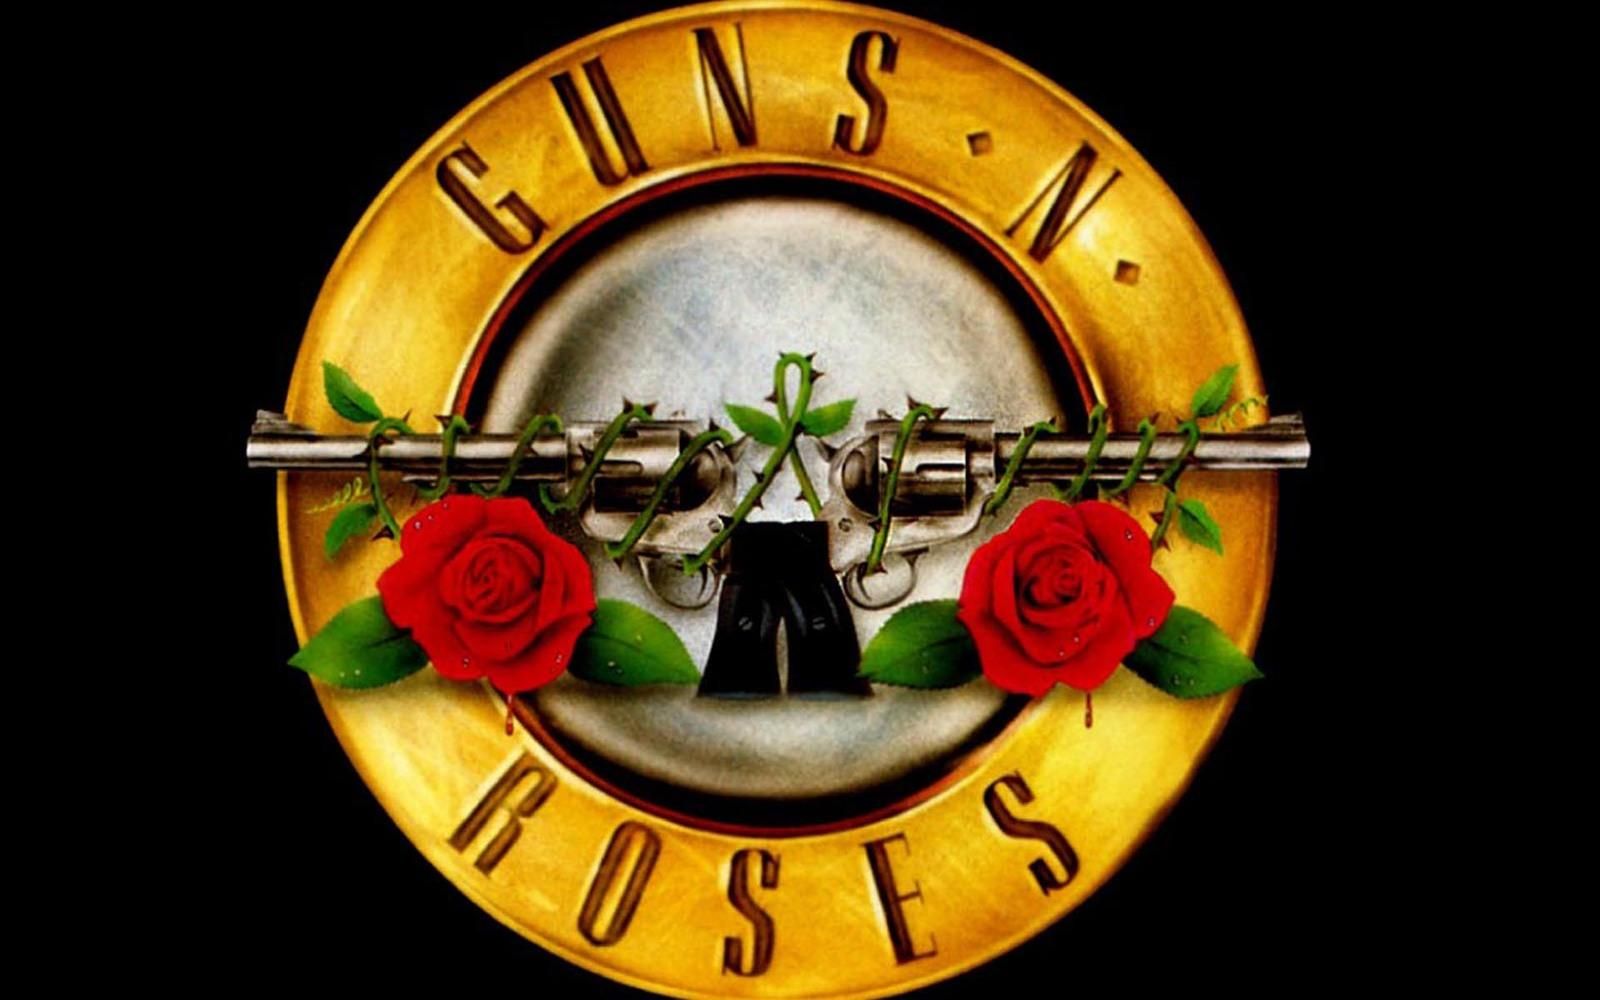 Клип группы Guns N 'Roses набрал рекордный миллиард просмотров на YouTube